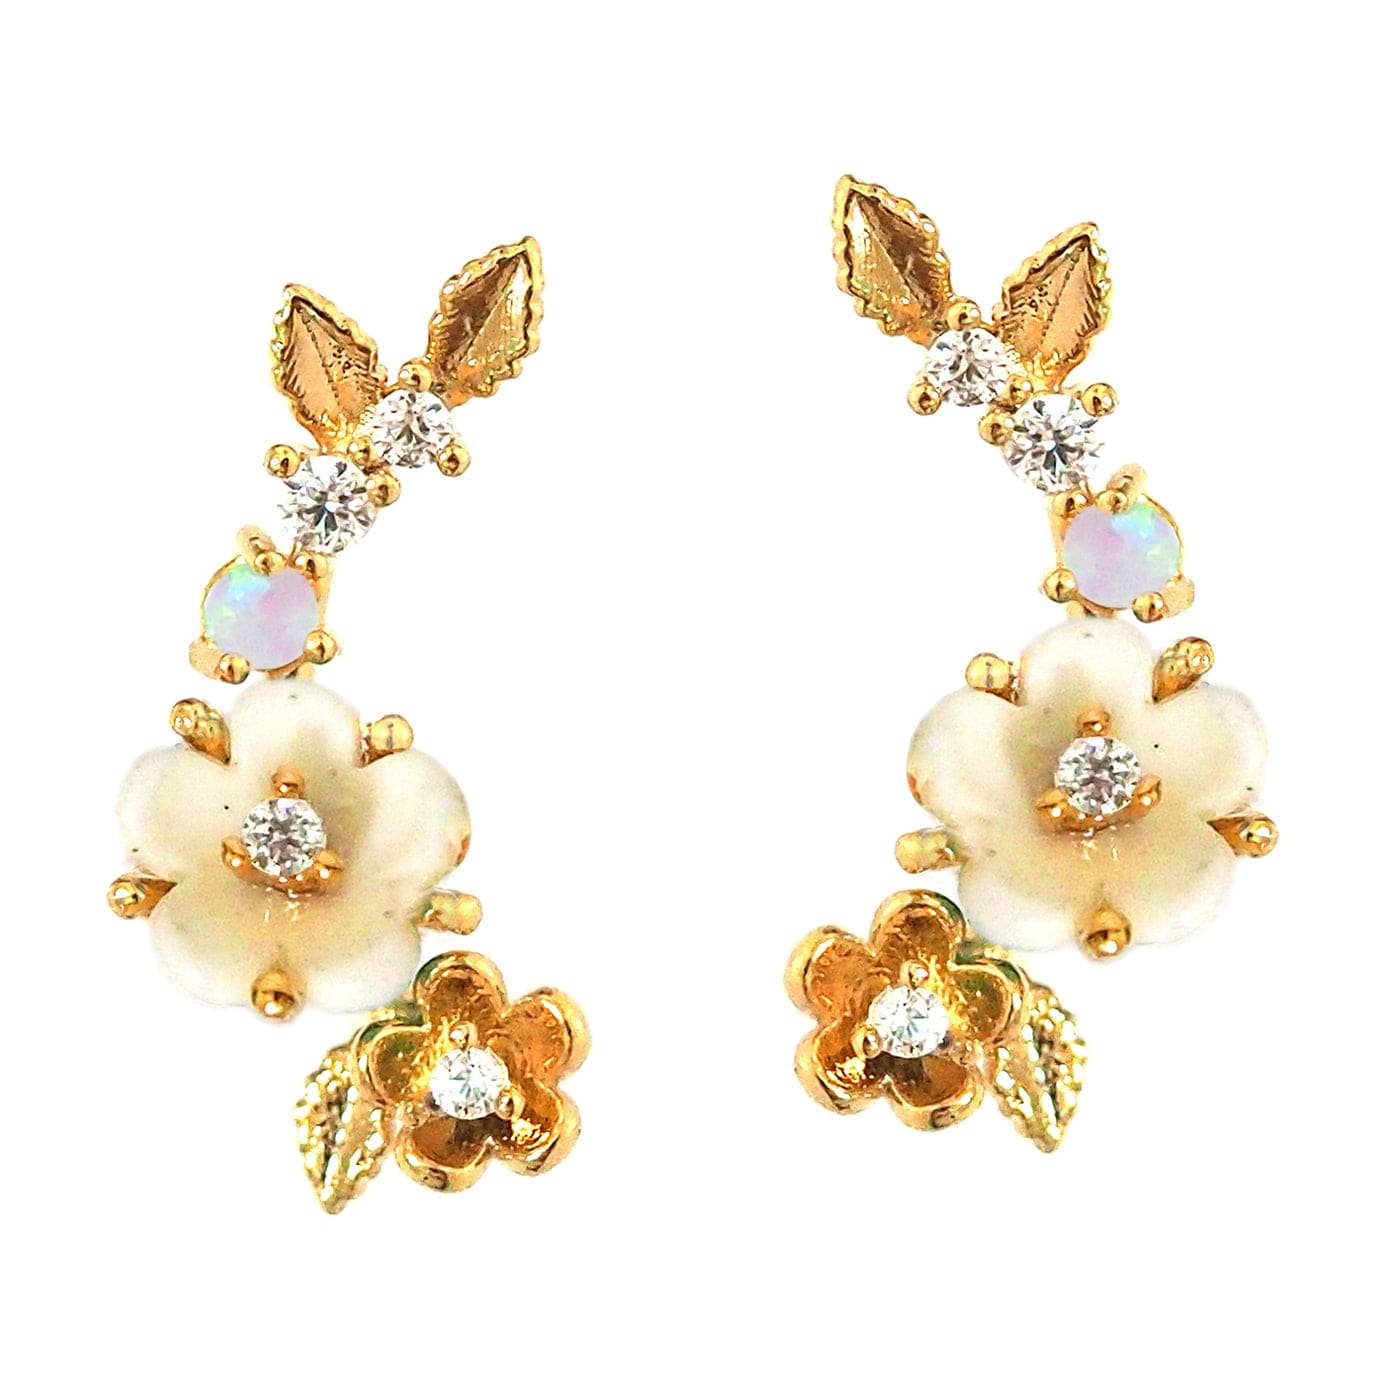 TAI JEWELRY Earrings White Blossom Trail Crawler Earrings